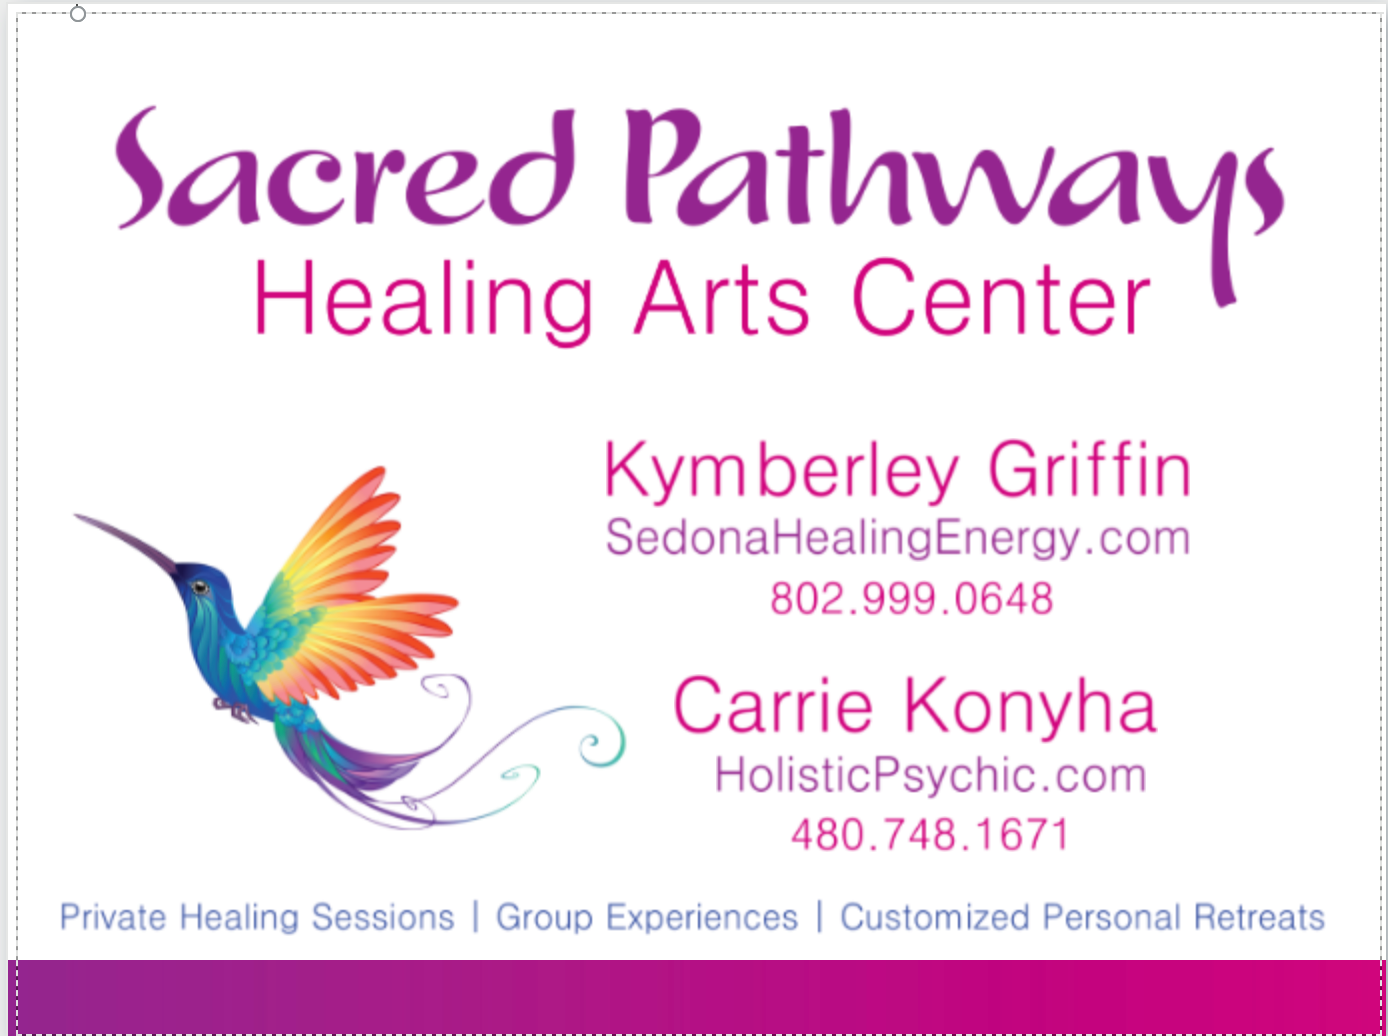 Sacred Pathways Healing Arts